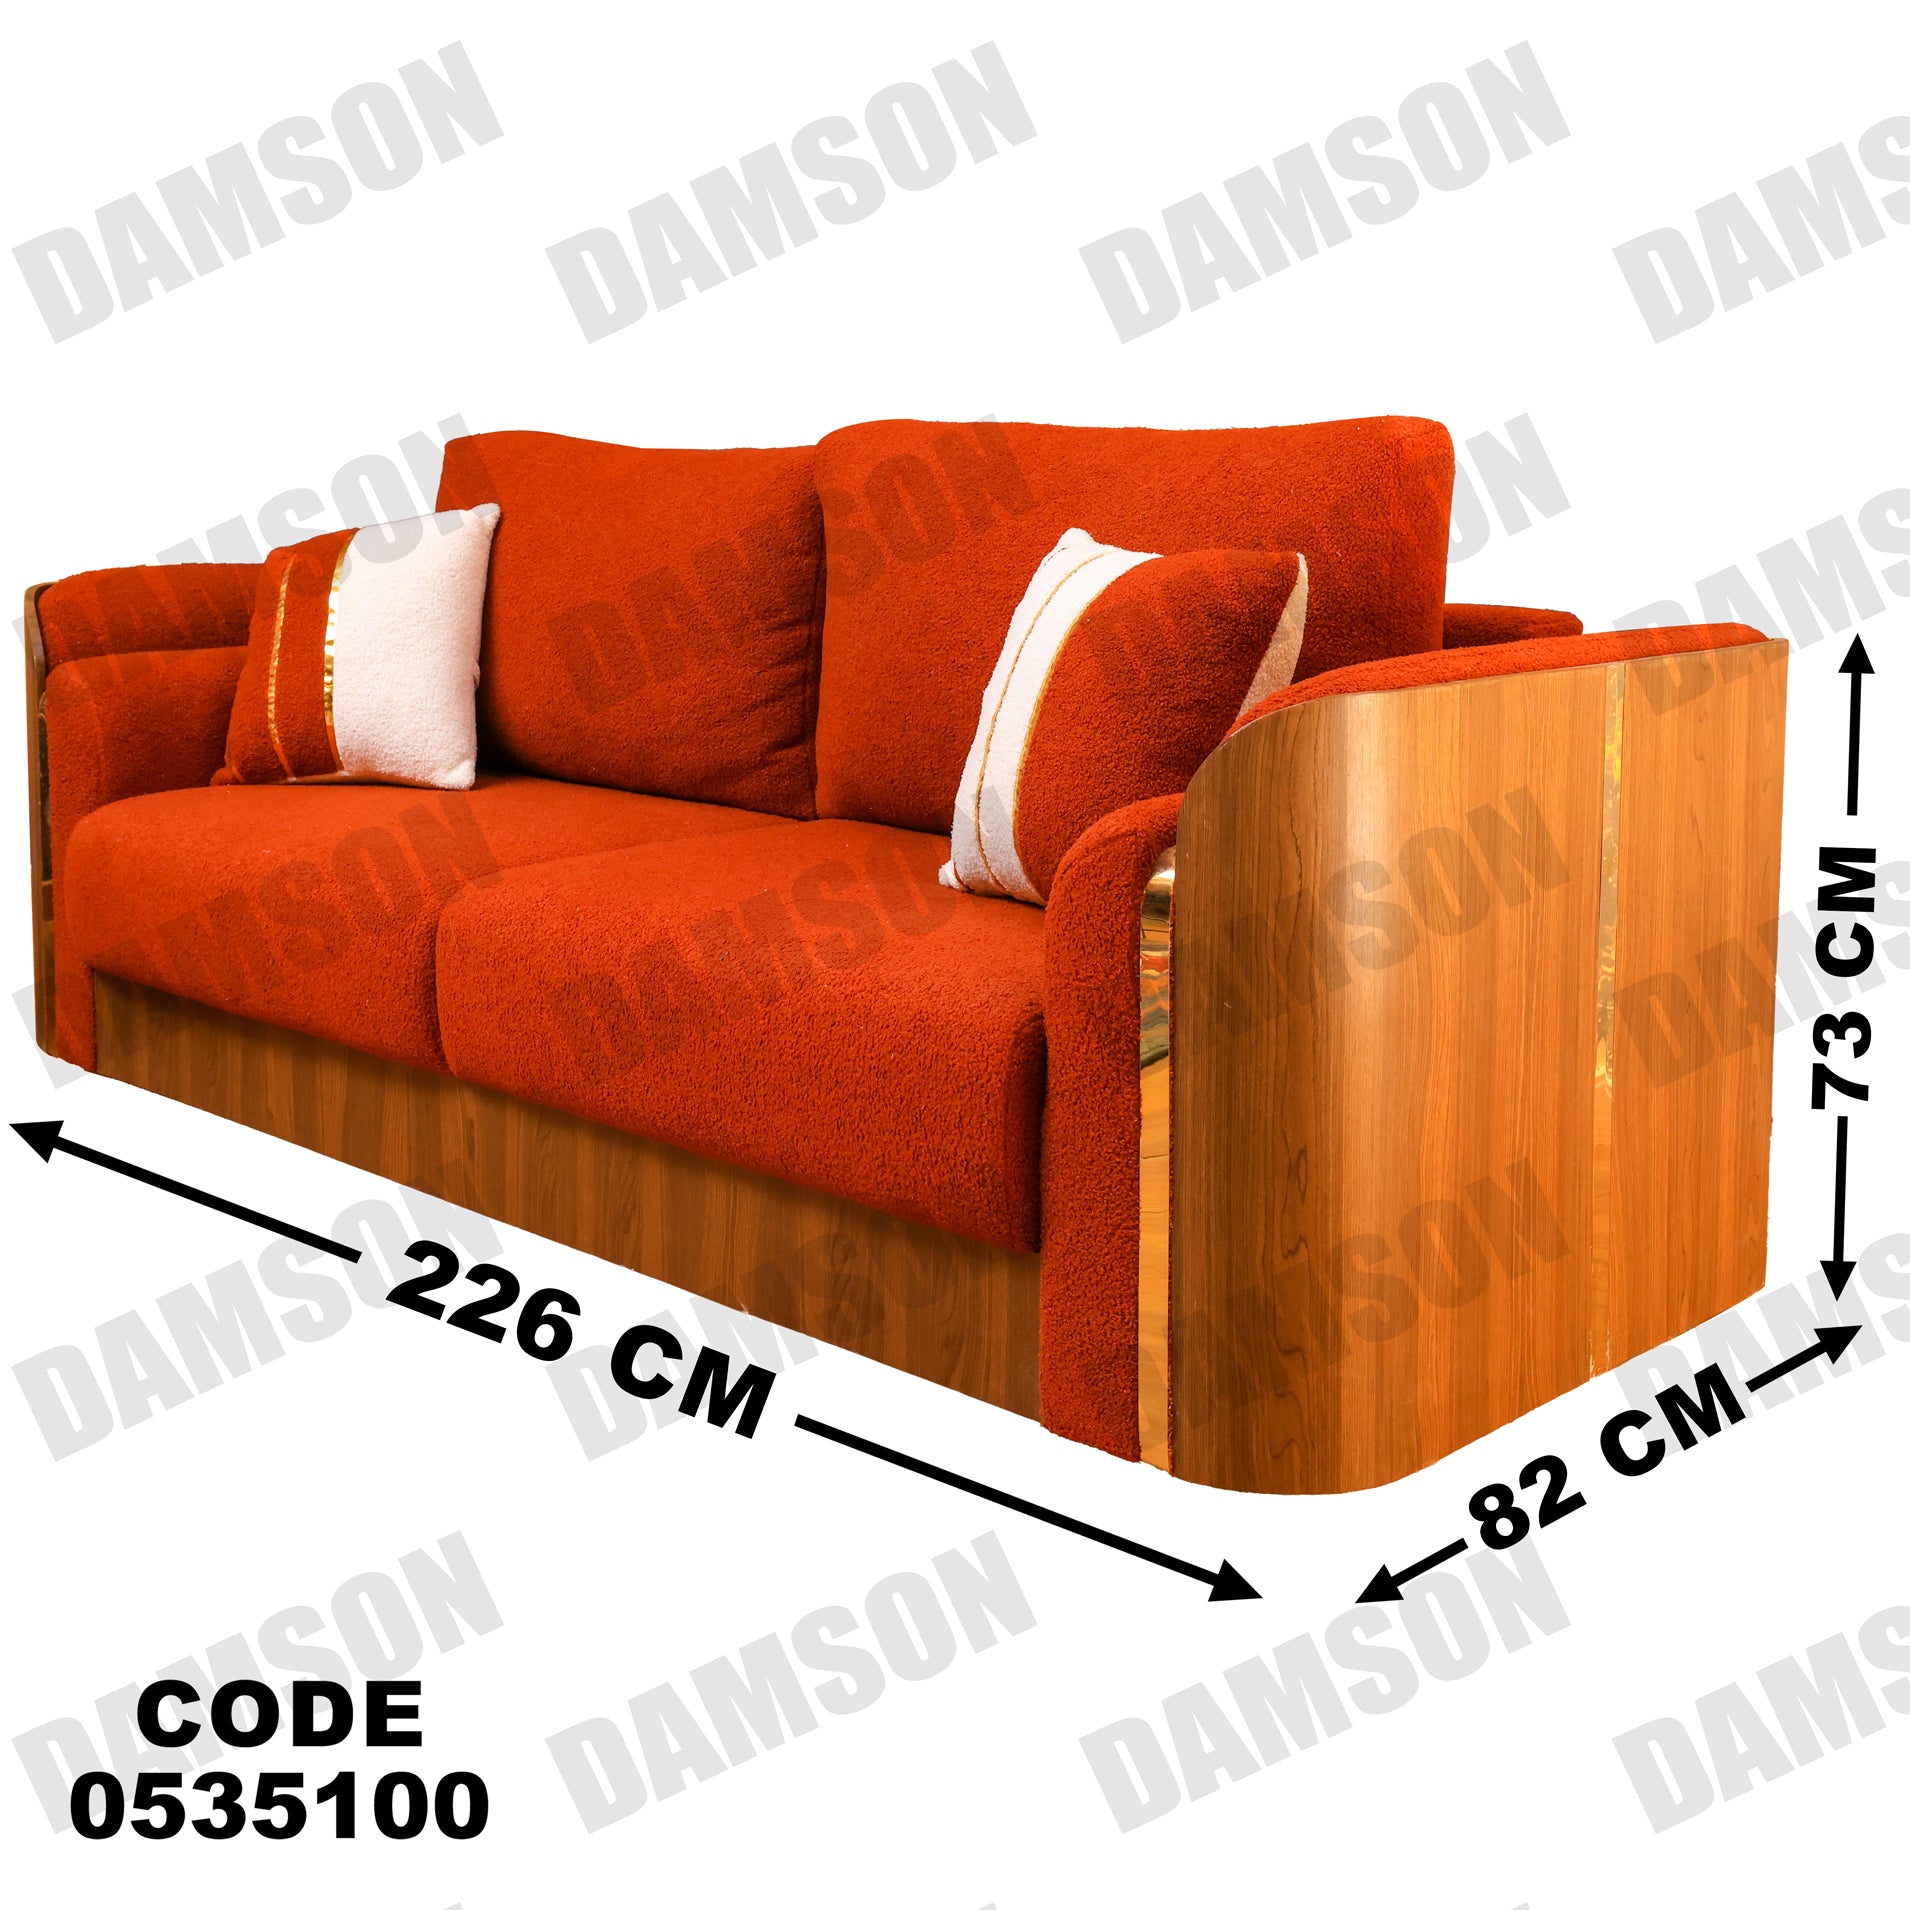 انترية 351 - Damson Furnitureانترية 351